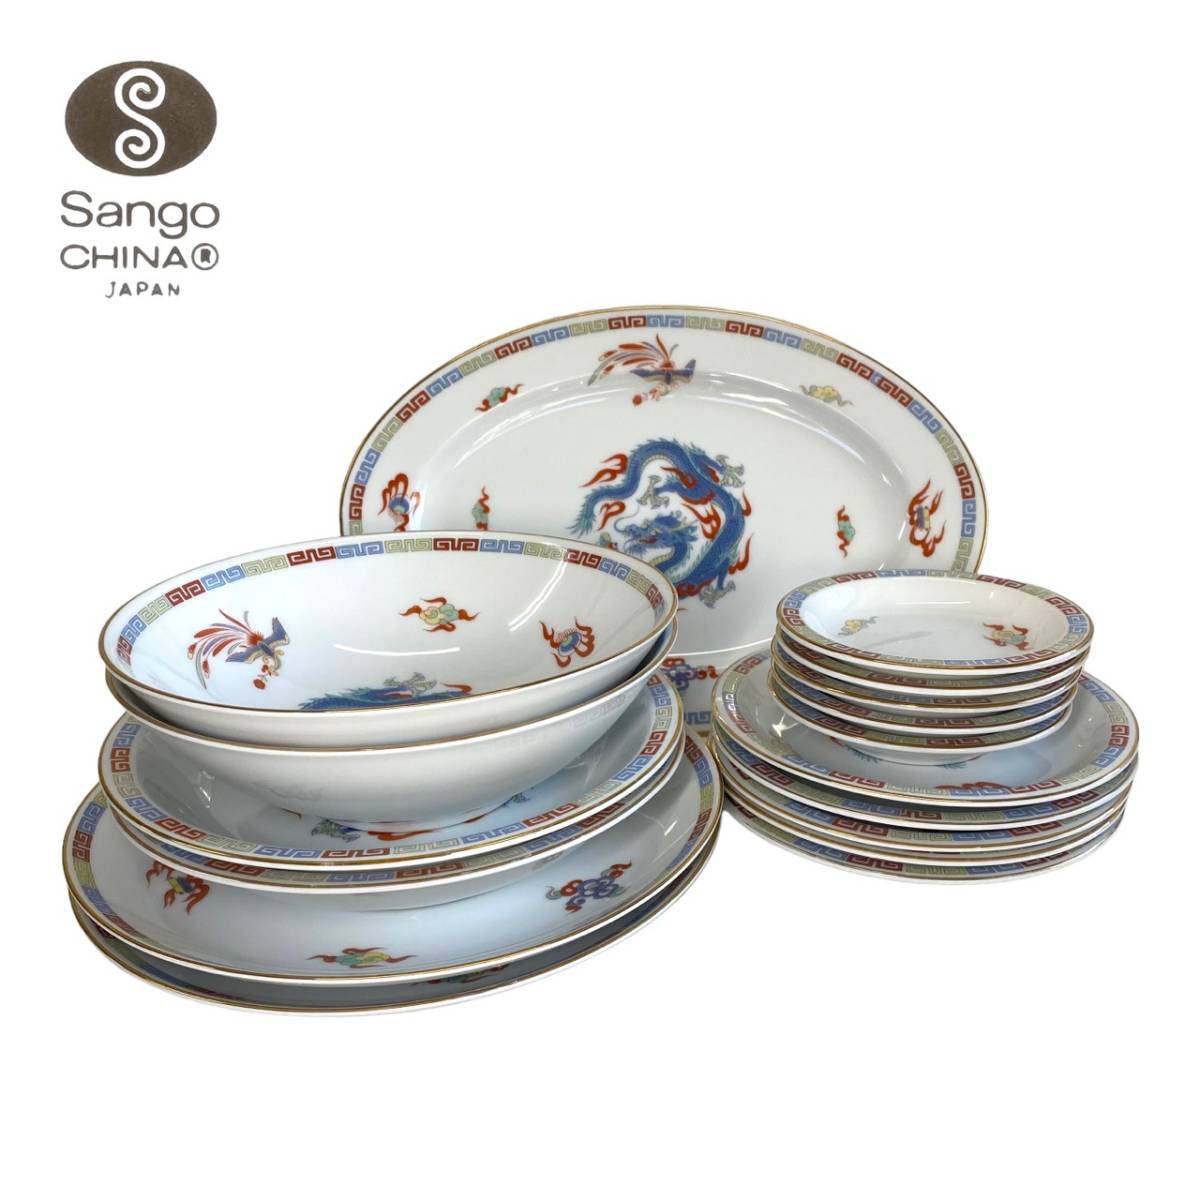 Sango 三郷陶器 中華食器セット 大量17点の画像1